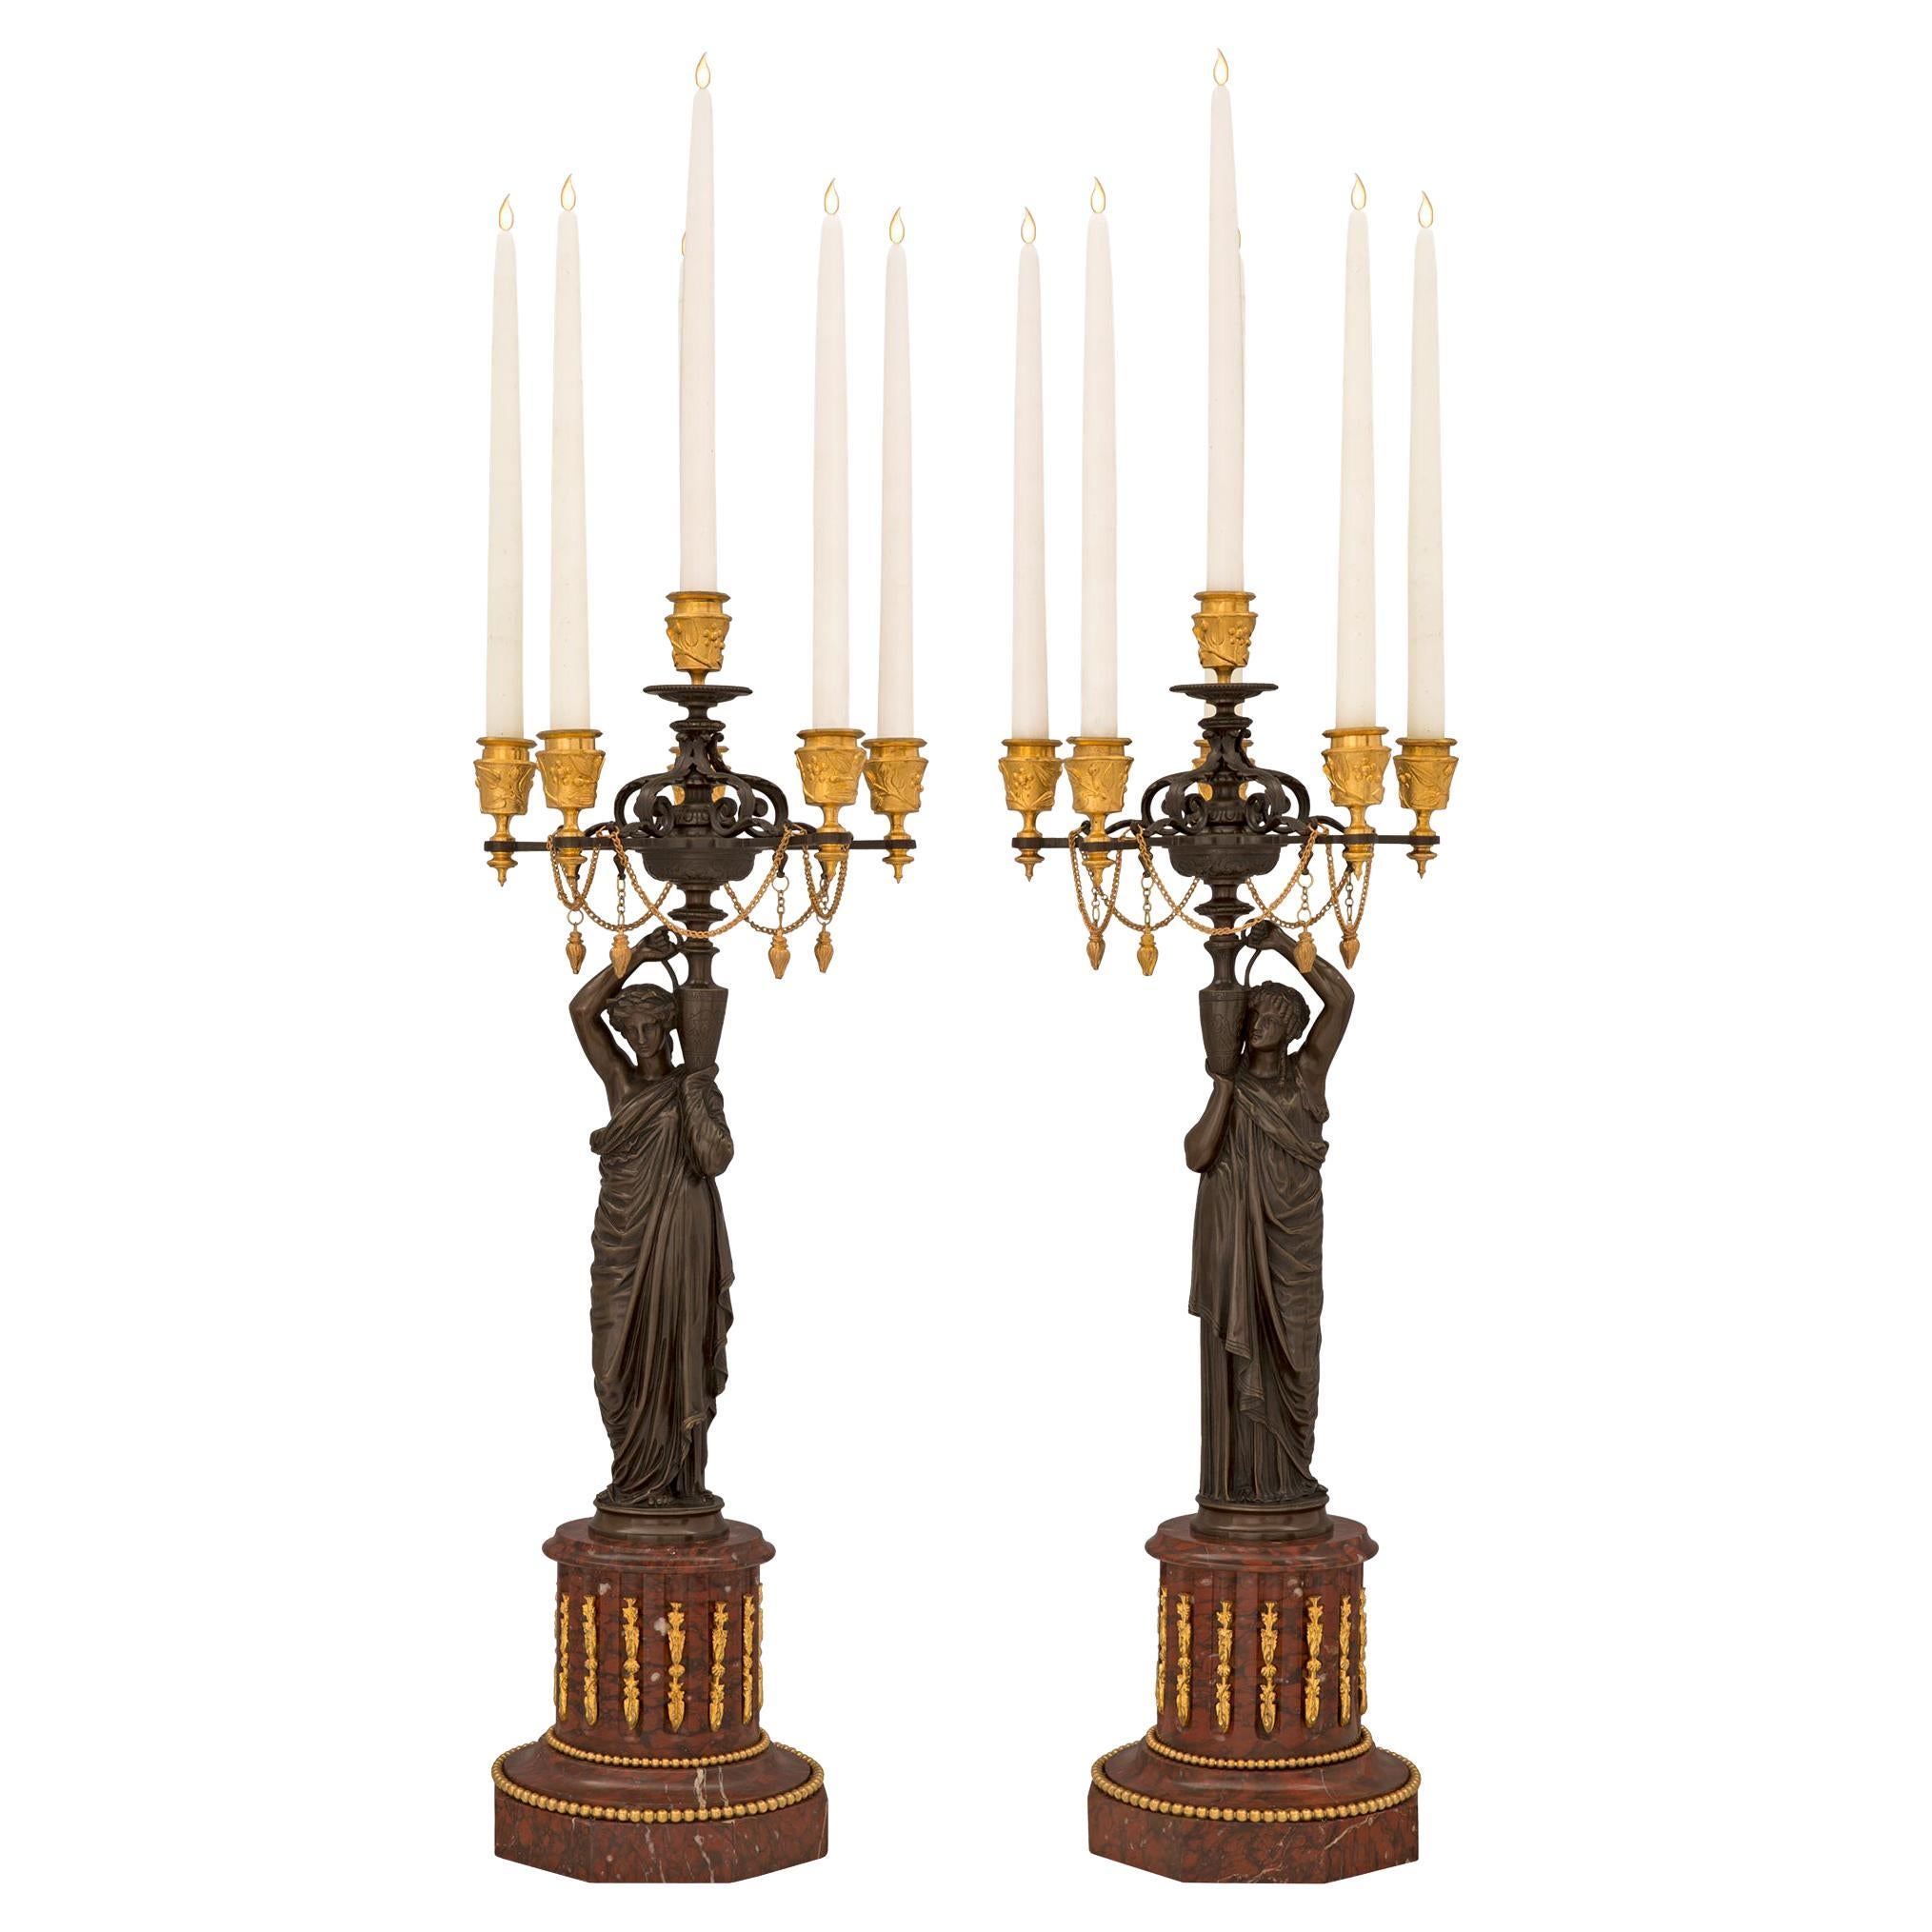 Paire de candélabres en marbre et bronze de style Louis XVI du 19ème siècle français